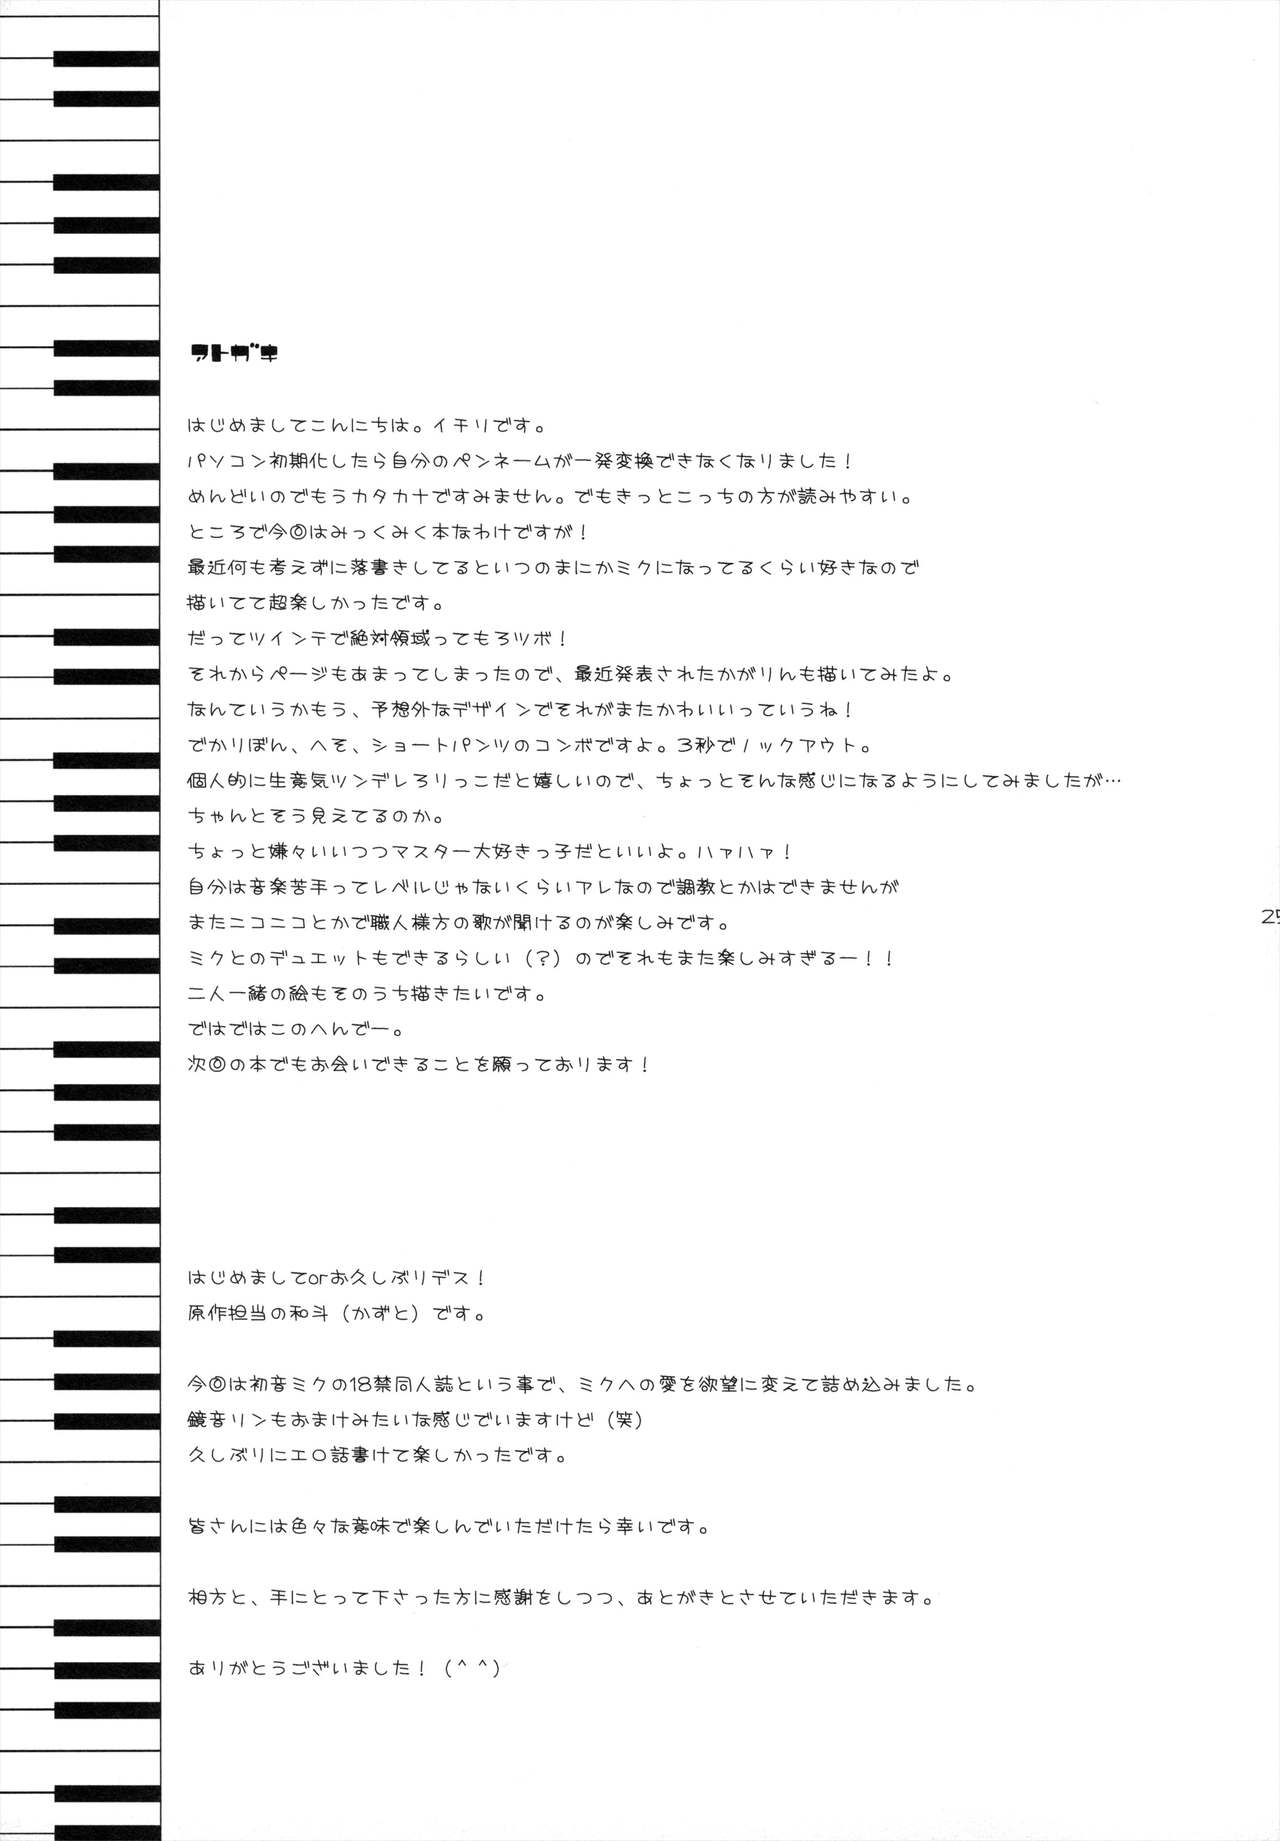 [23.4do (Sazaki Ichiri, Kazuto)] LESSON 1 (Vocaloid) [2008-01-20] [23.4ド (沙咲聿梨、和斗)] LESSON1 (VOCALOID) [2008年1月20日]